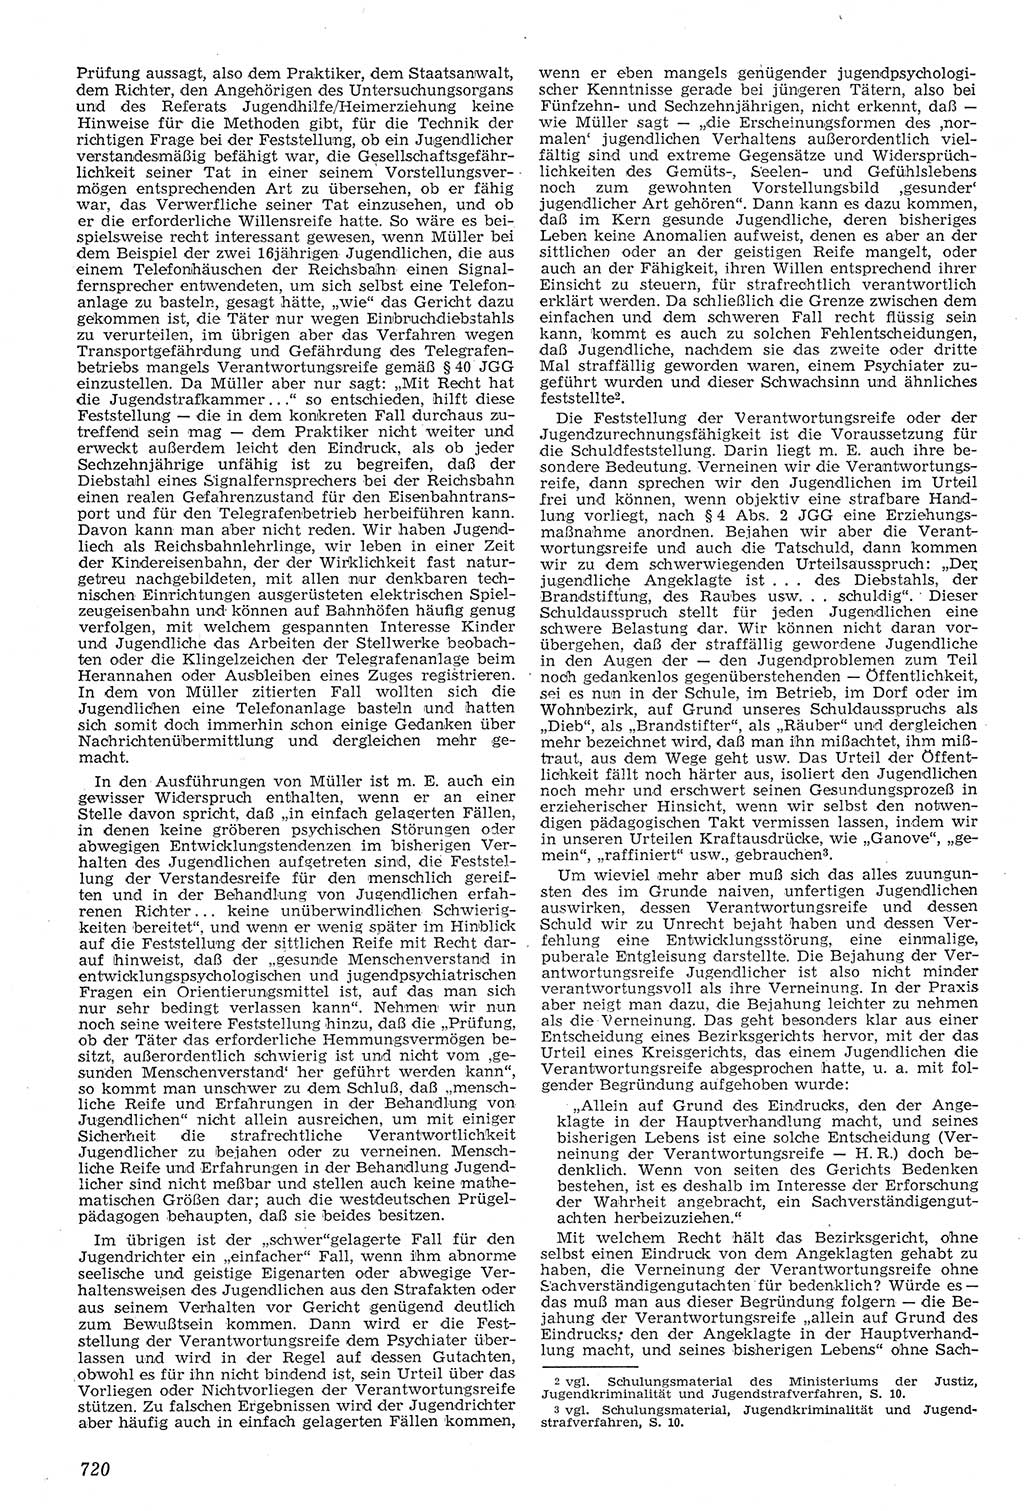 Neue Justiz (NJ), Zeitschrift für Recht und Rechtswissenschaft [Deutsche Demokratische Republik (DDR)], 11. Jahrgang 1957, Seite 720 (NJ DDR 1957, S. 720)